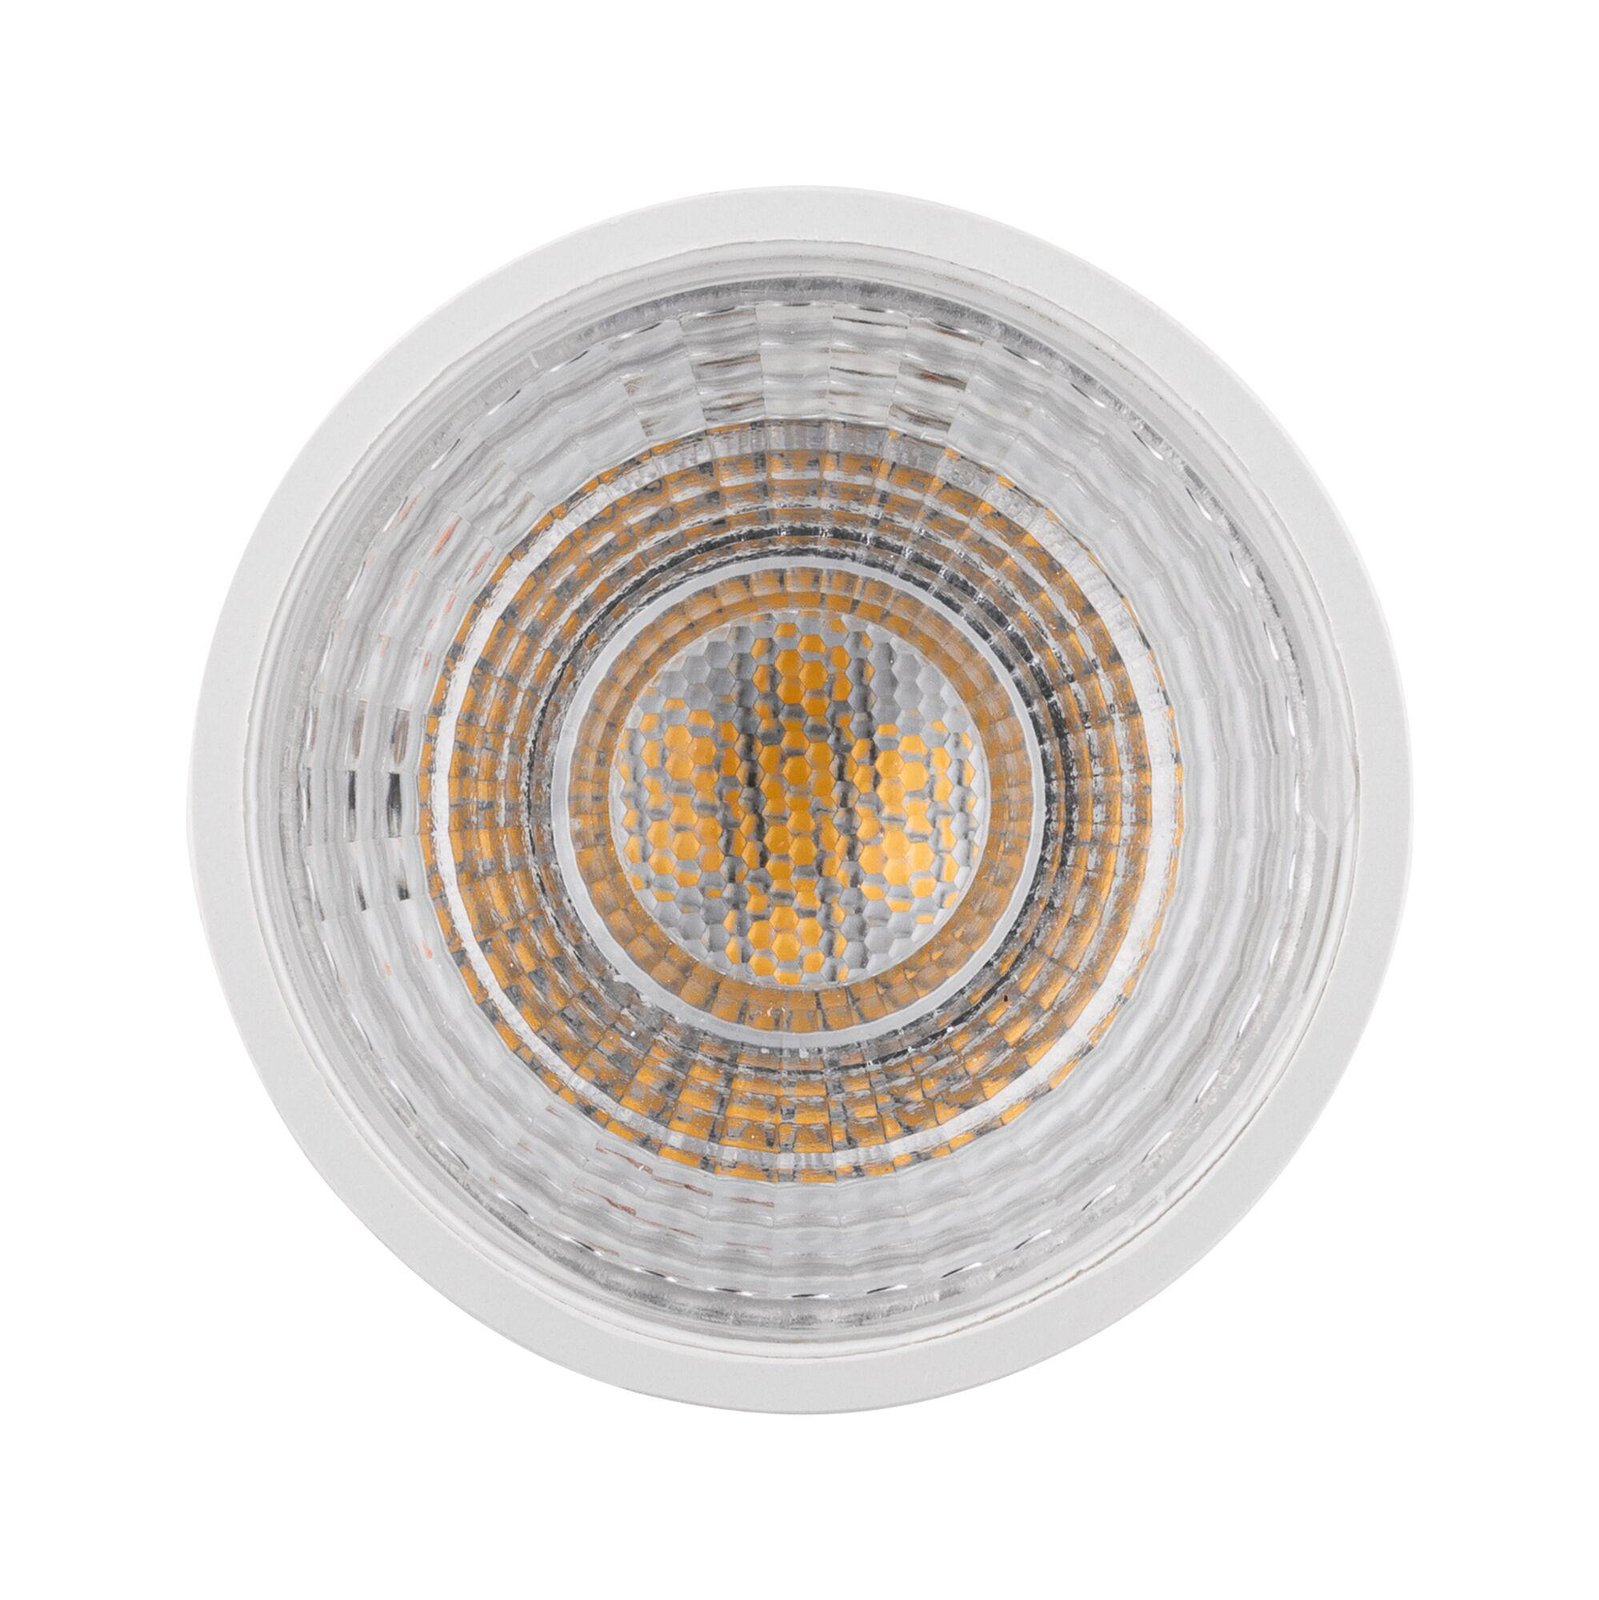 Paulmann LED reflectorlamp 2.700 K wit GU10 8 W dimbaar 36°